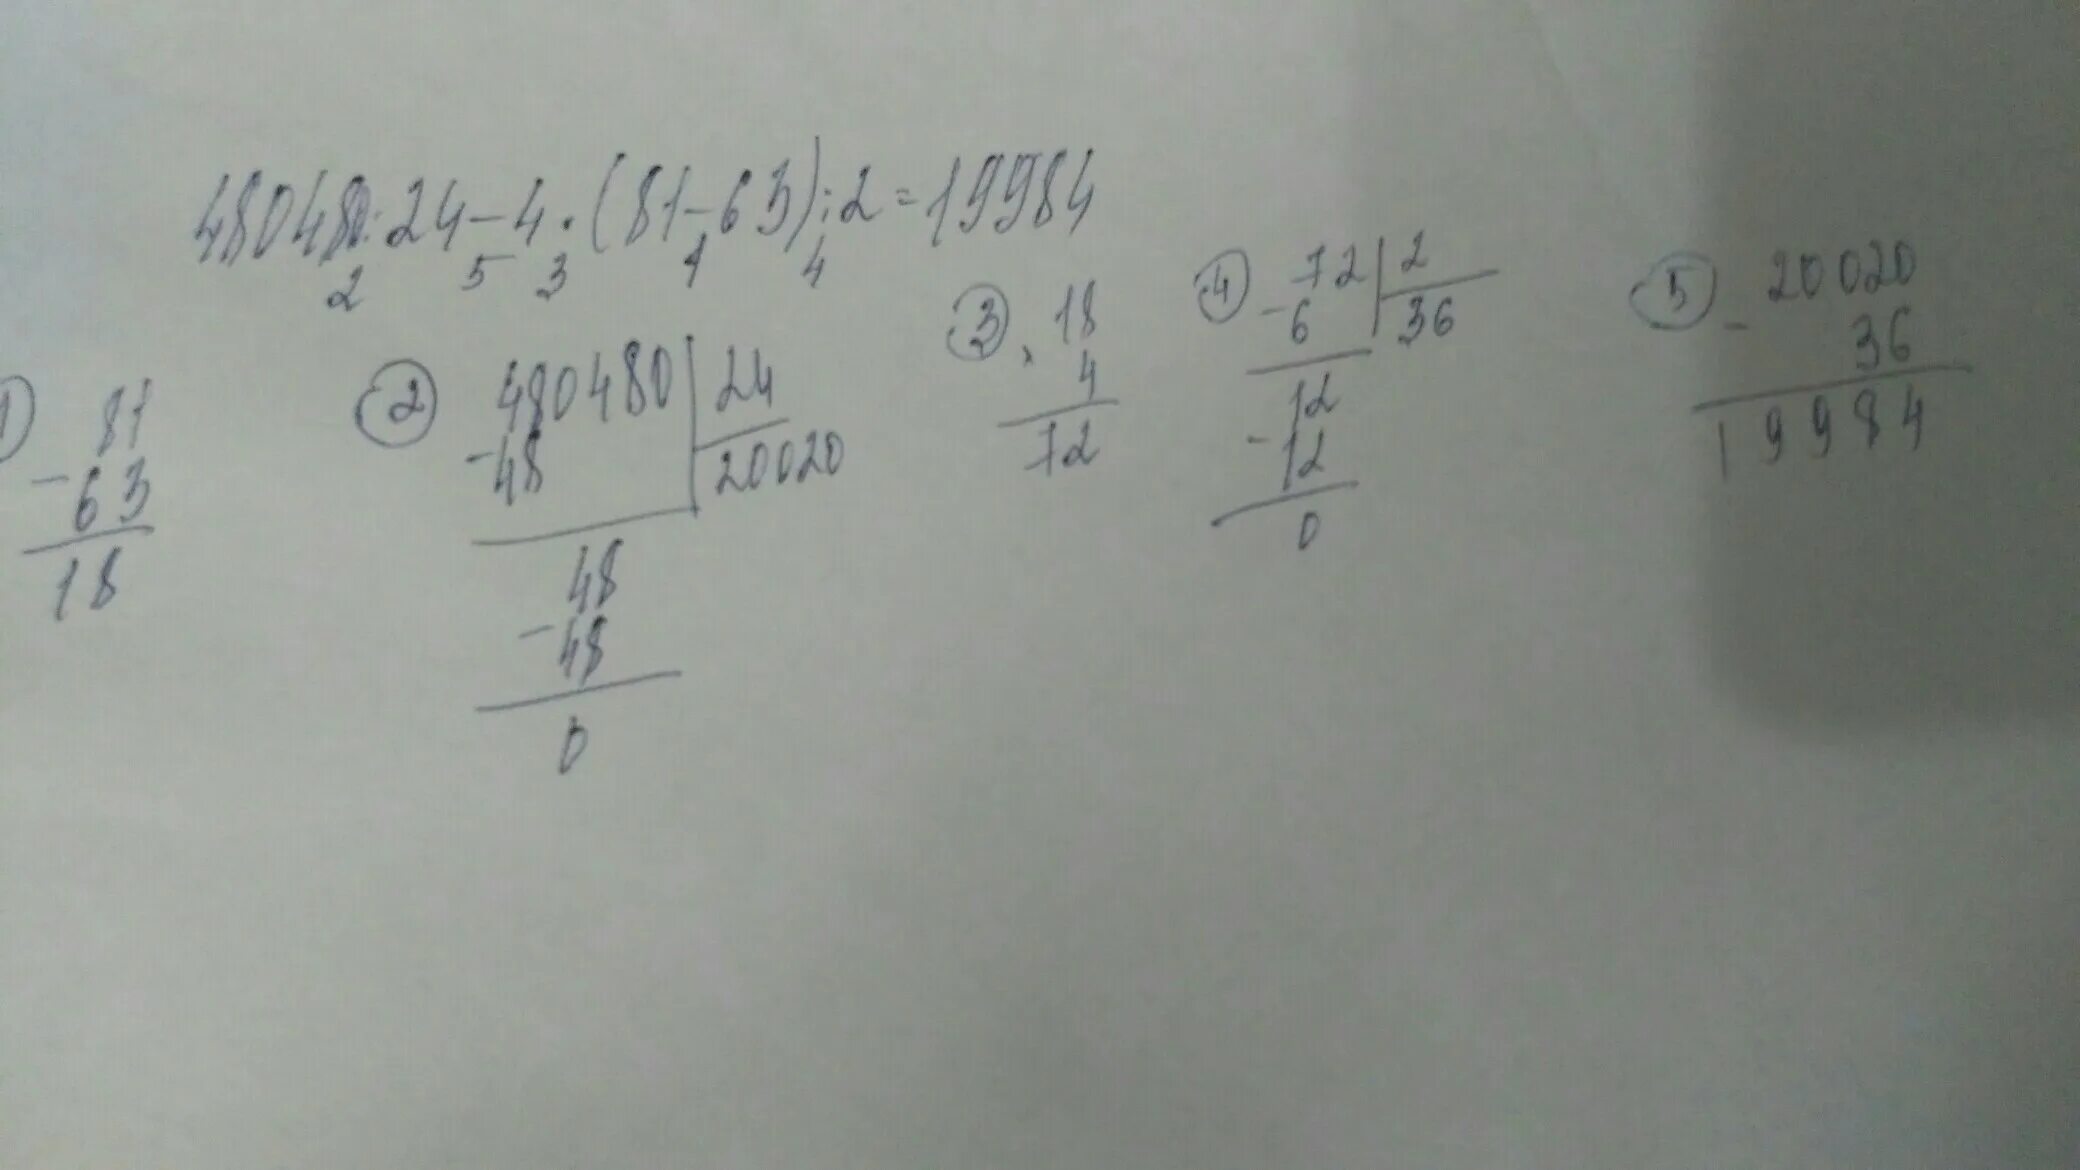 24 разделить на 2 столбиком. 480480 24-4 81-63 2 Решение. Решить 480480:24-4*(81-63):2. 480480:24-4*(81-63):2 В столбик. Ответ 480480:24-4*(81-63) :2.